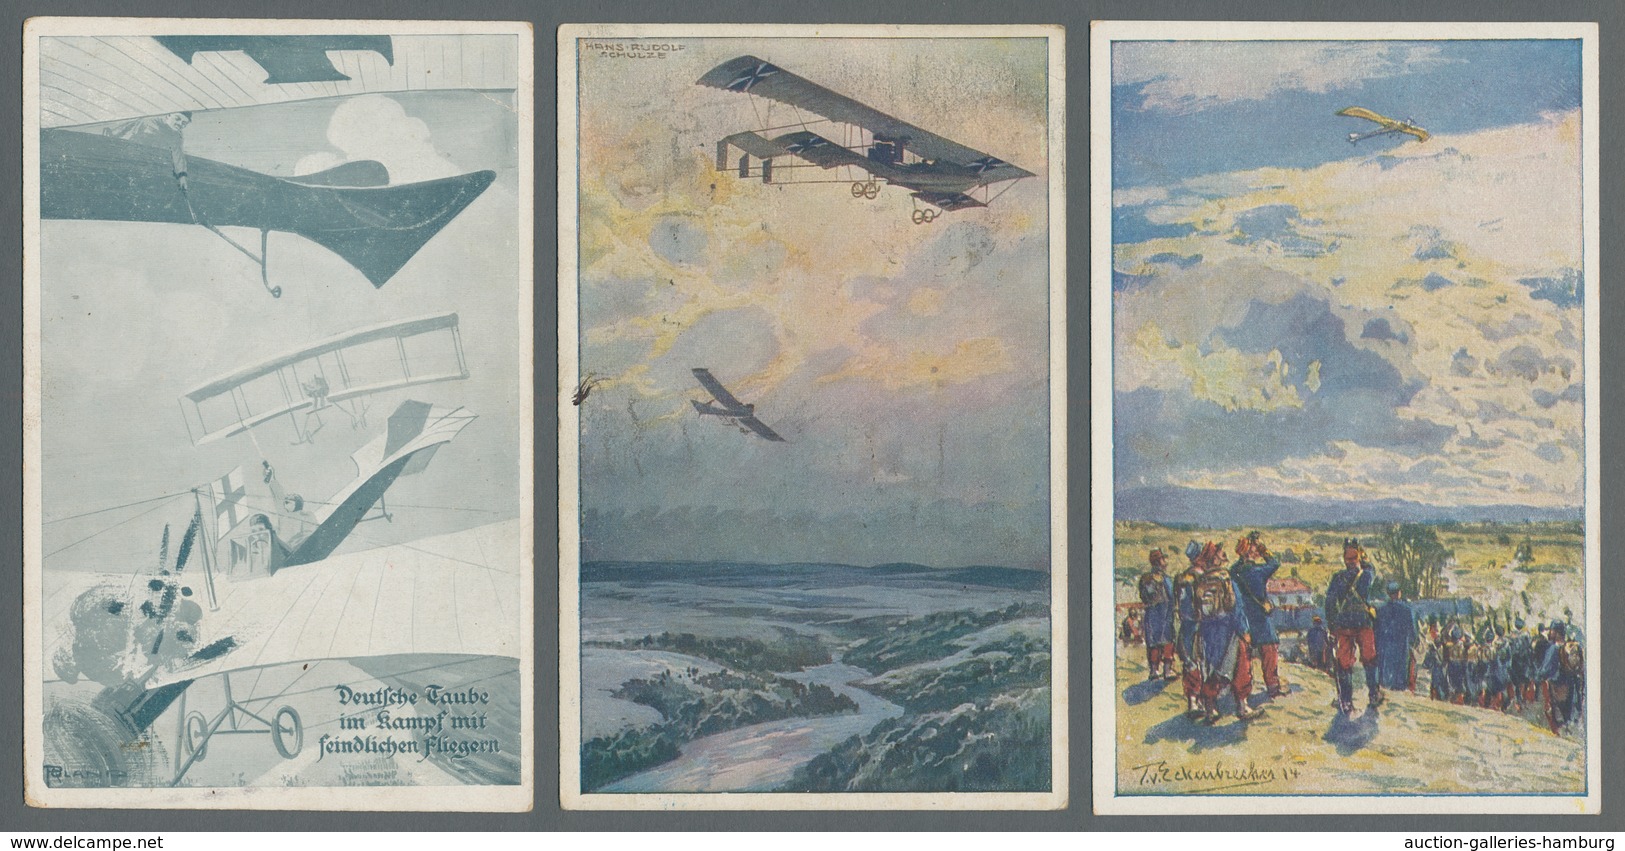 Flugpost Deutschland: 1914 (ca.), zwölf verschiedene oft Colorkarten des "Deutschen Luftflotten-Vere